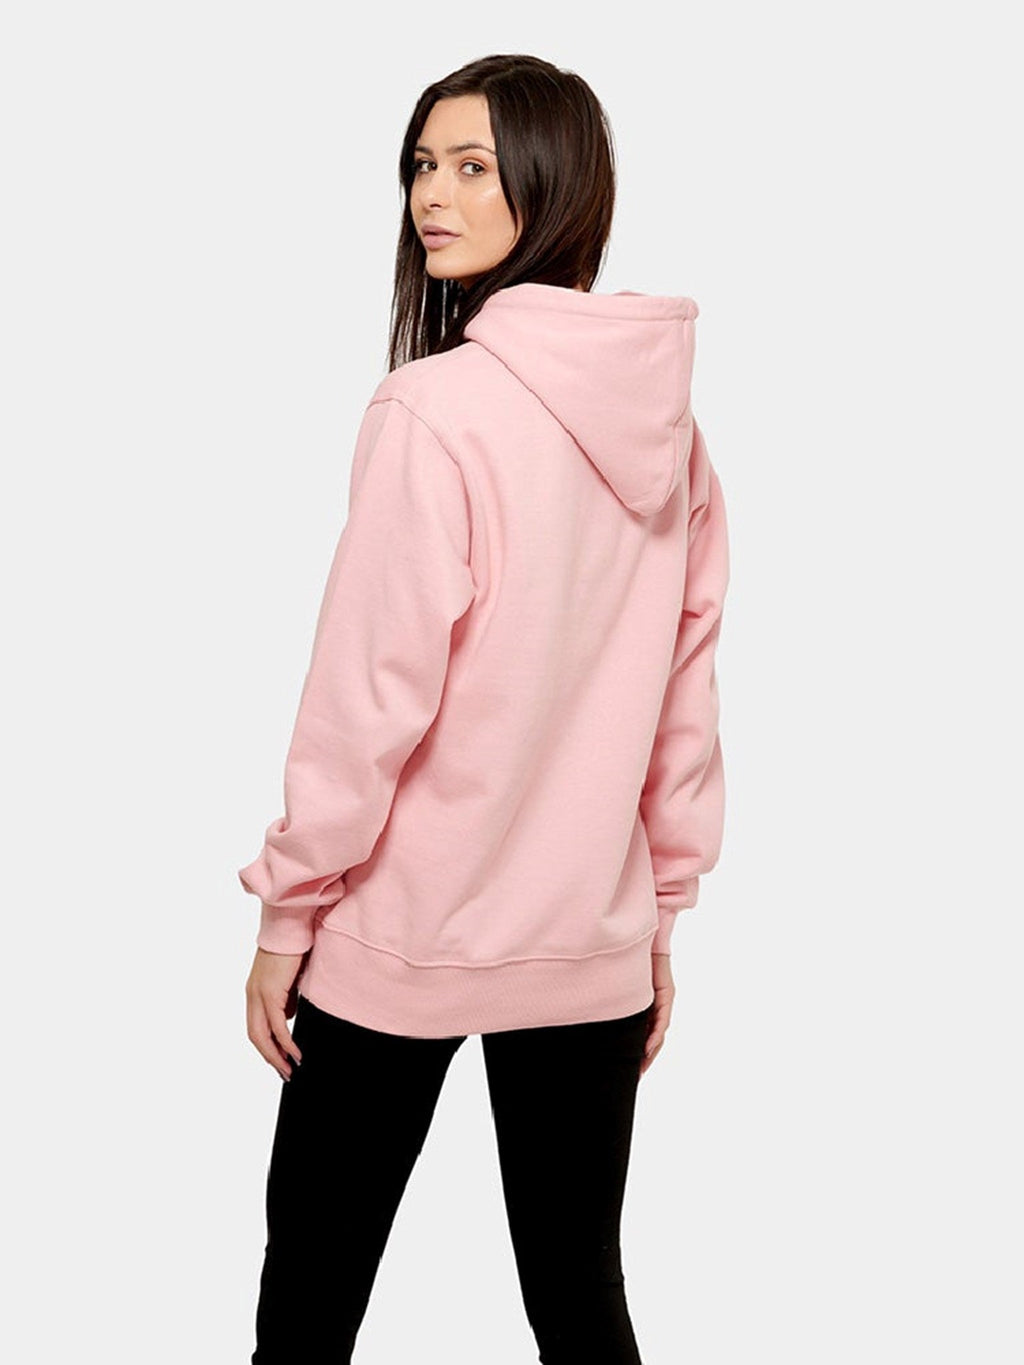 Dečko hoodie - ružičasta